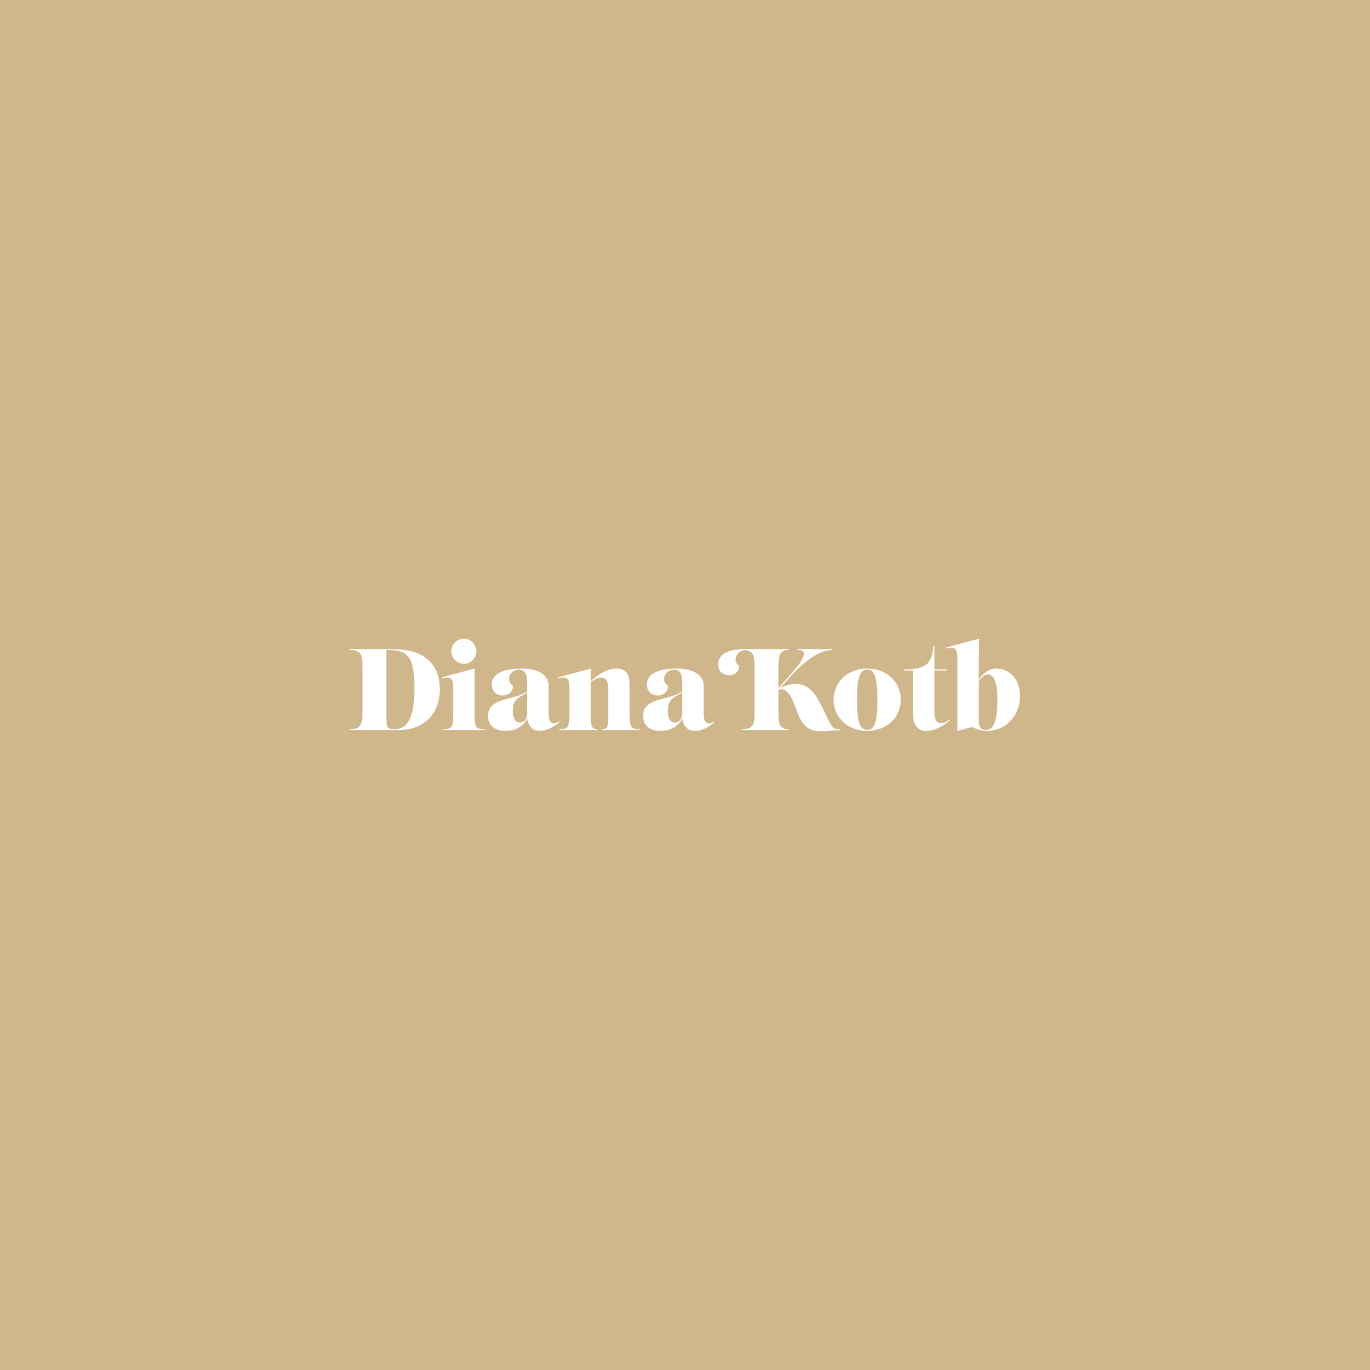 Diana Kotb Logo